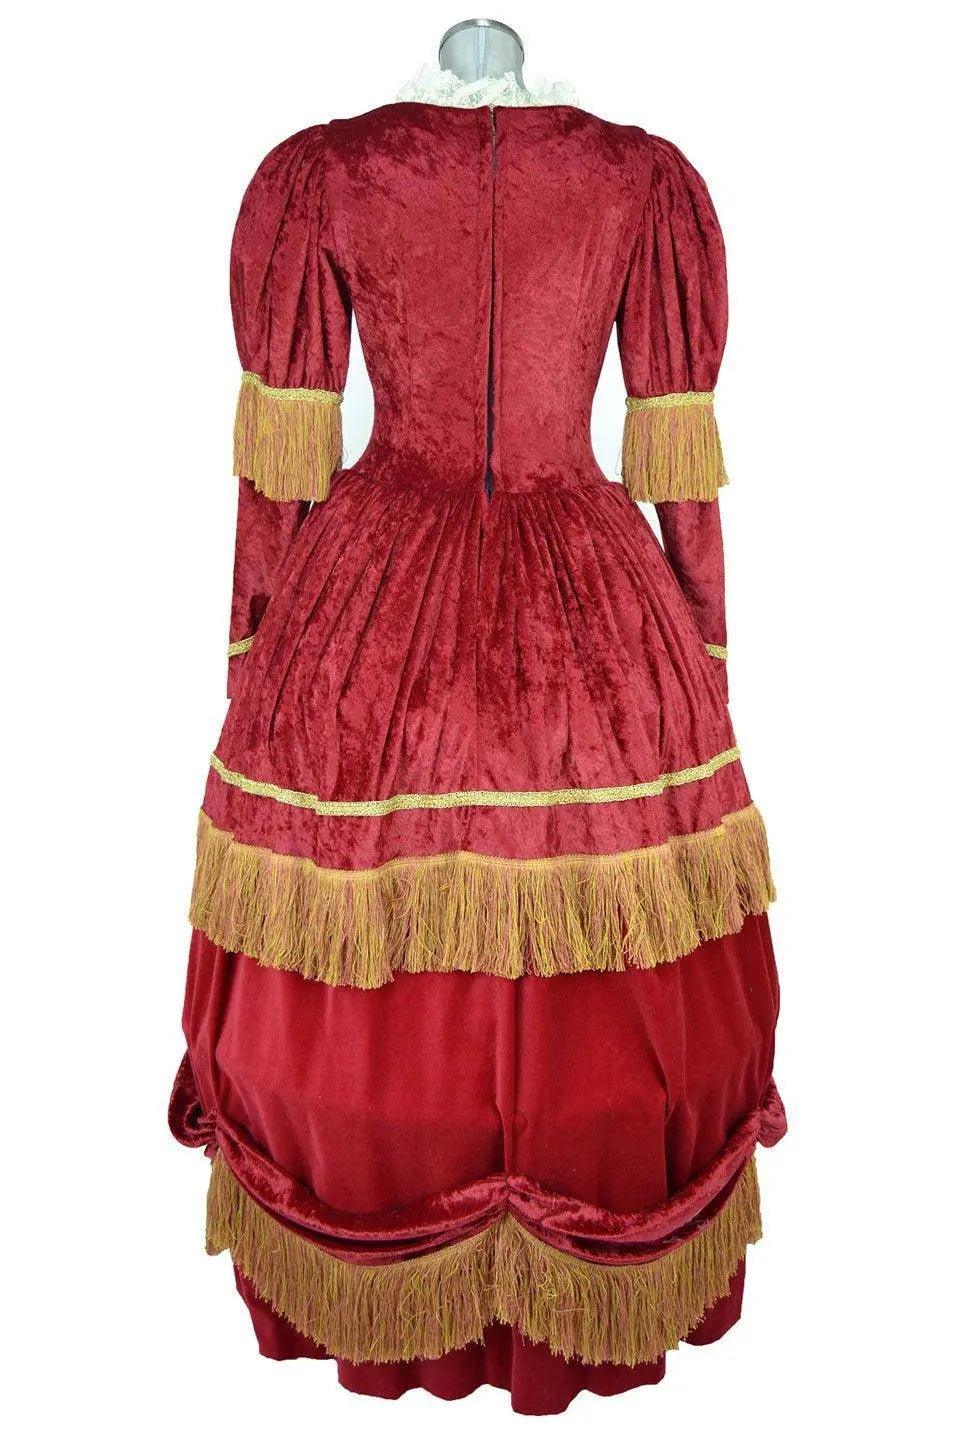 Noleggio costume di Scena donna stile barocco - storico - carnevale